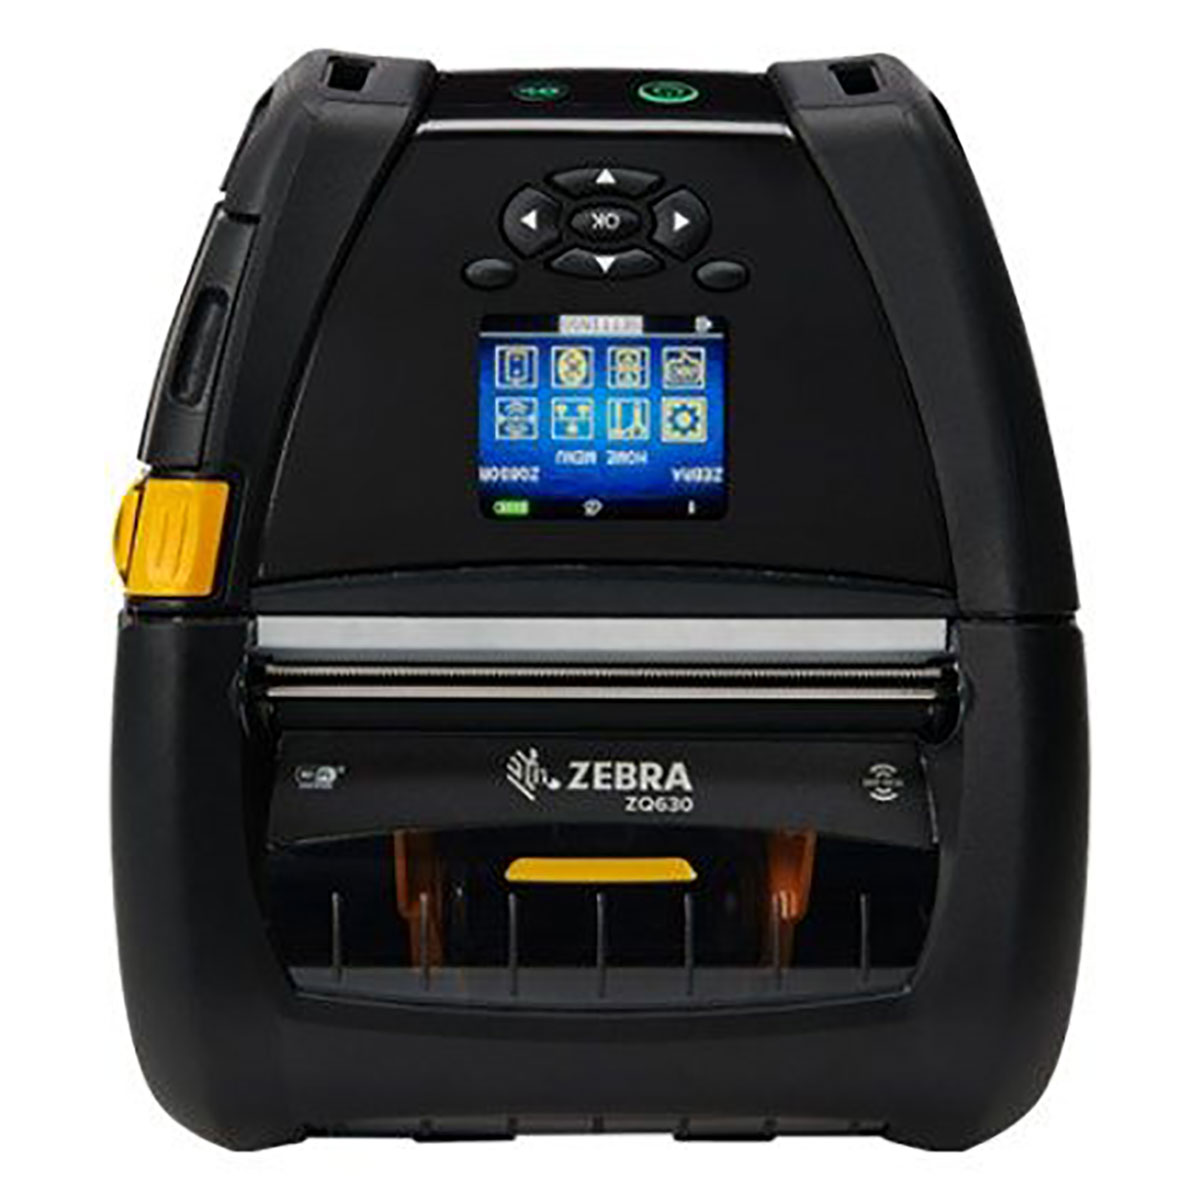 ZQ630 RFID Mobil Yazıcı